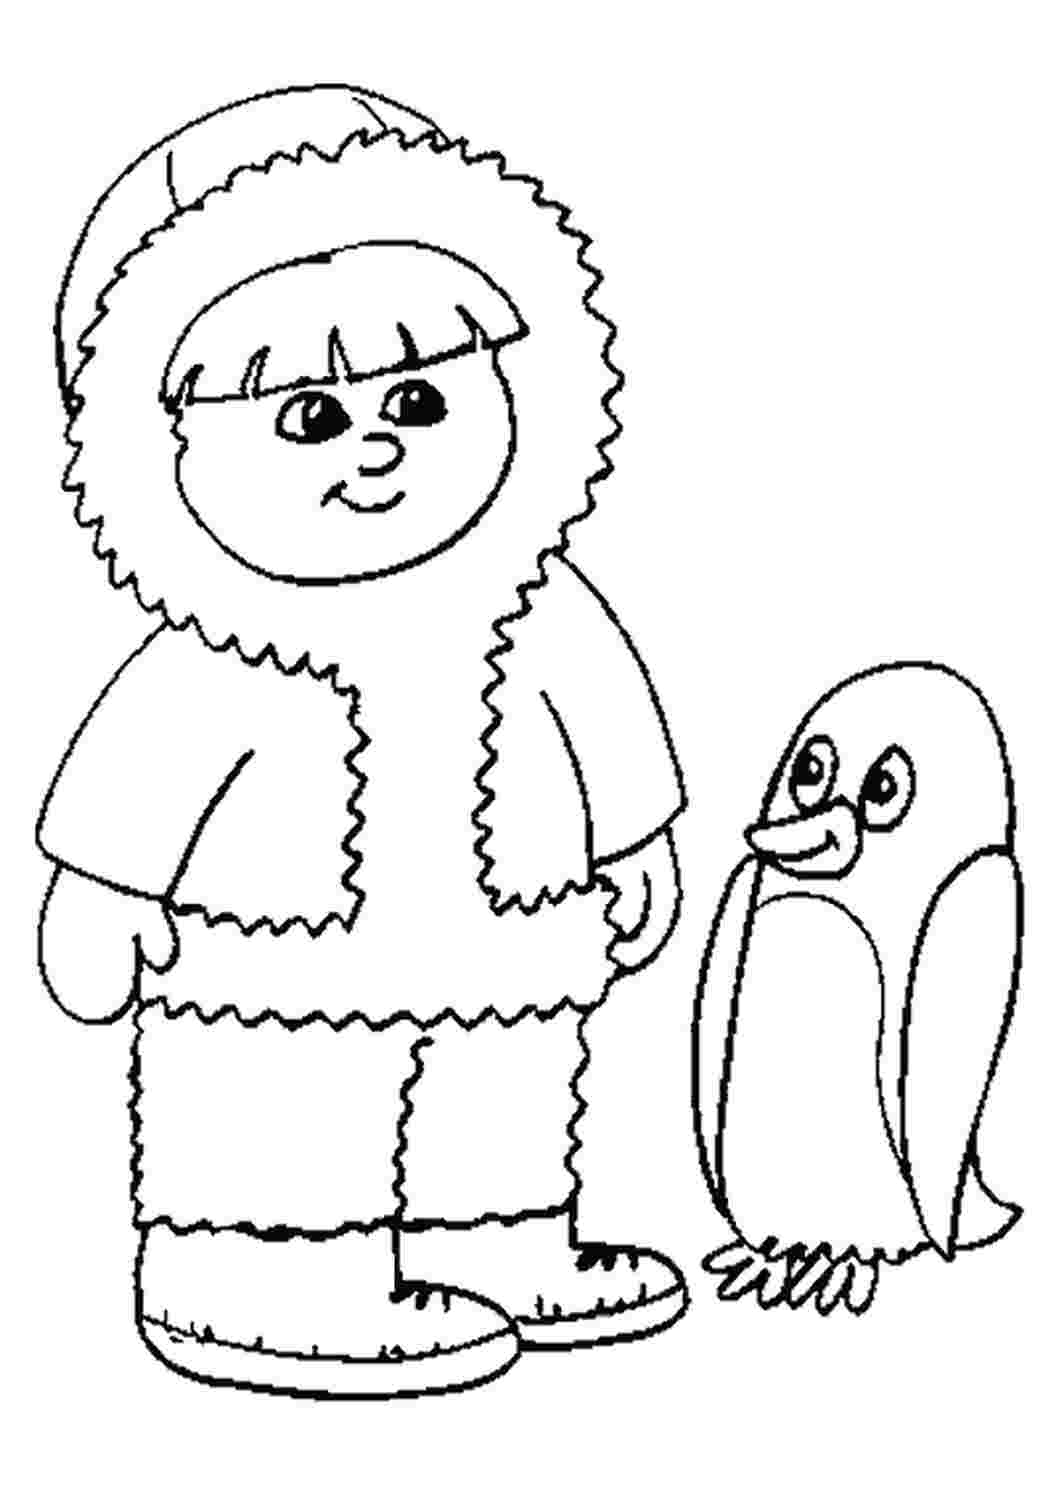 Пингвин рисунок раскраска 56 фото